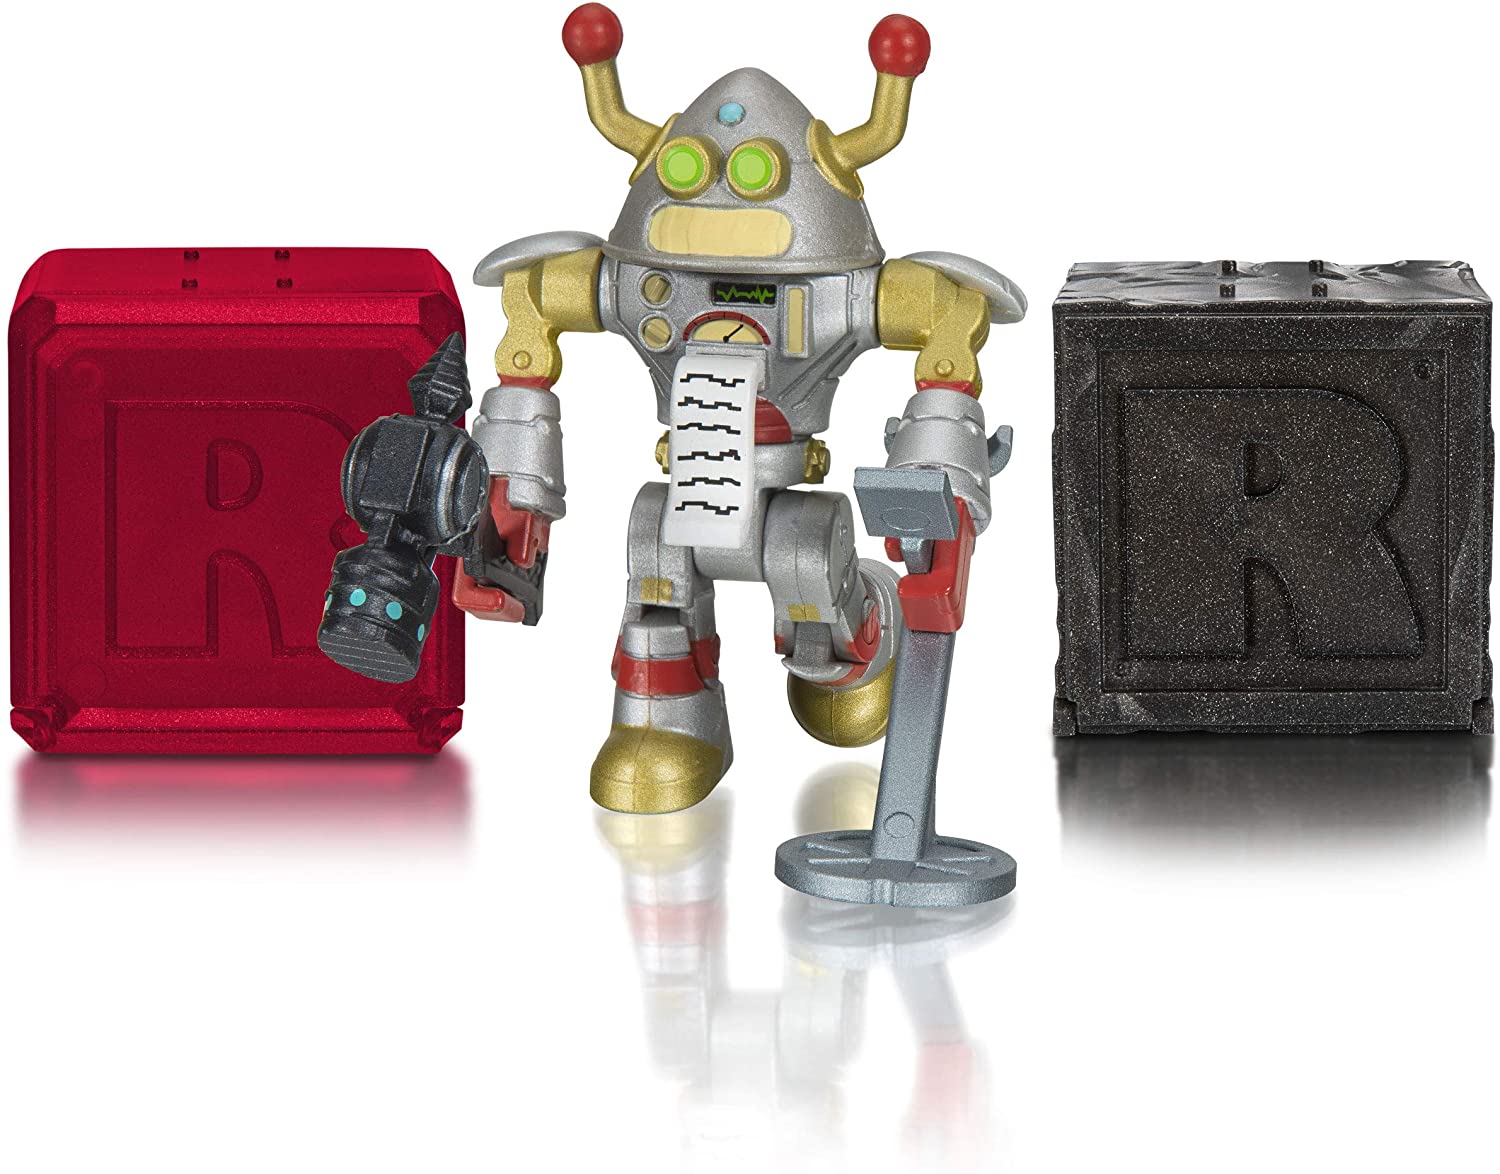 Игровой набор Roblox - Фигурка героя Brainbot 3000 Core с аксессуарами  